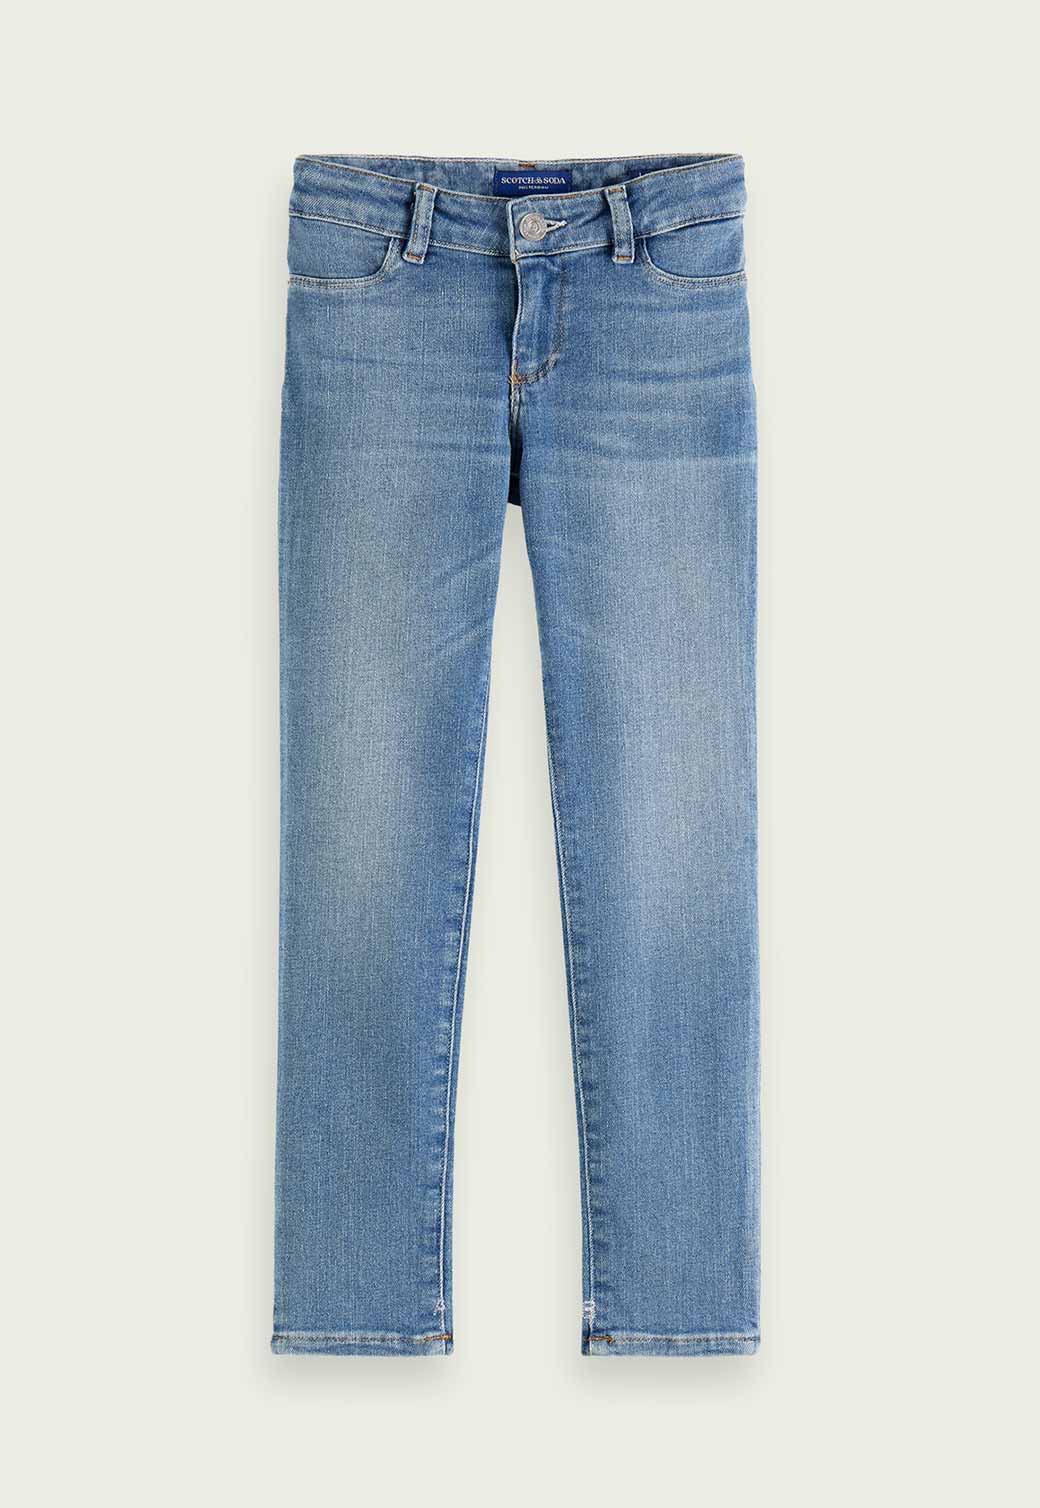 Slate Gray ג'ינס סקיני ארוך לילדים MILOU SCOTCH & SODA